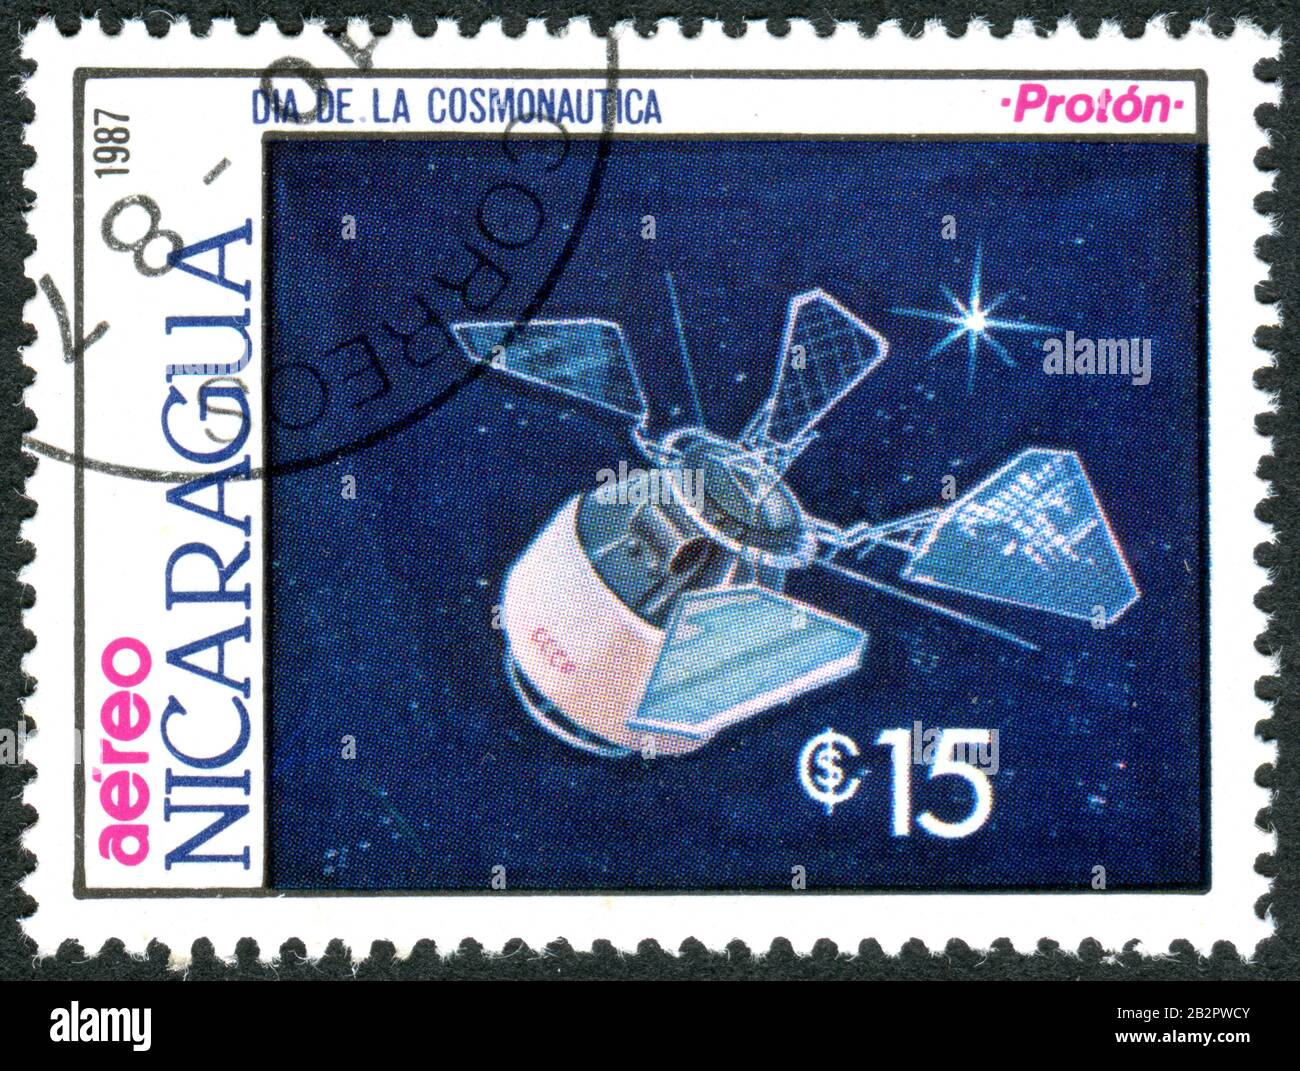 Un timbre imprimé au Nicaragua, consacré à la Journée cosmonautics, a représenté un modèle de satellites soviétiques d'observation de la Terre - Proton, vers 1987 Banque D'Images